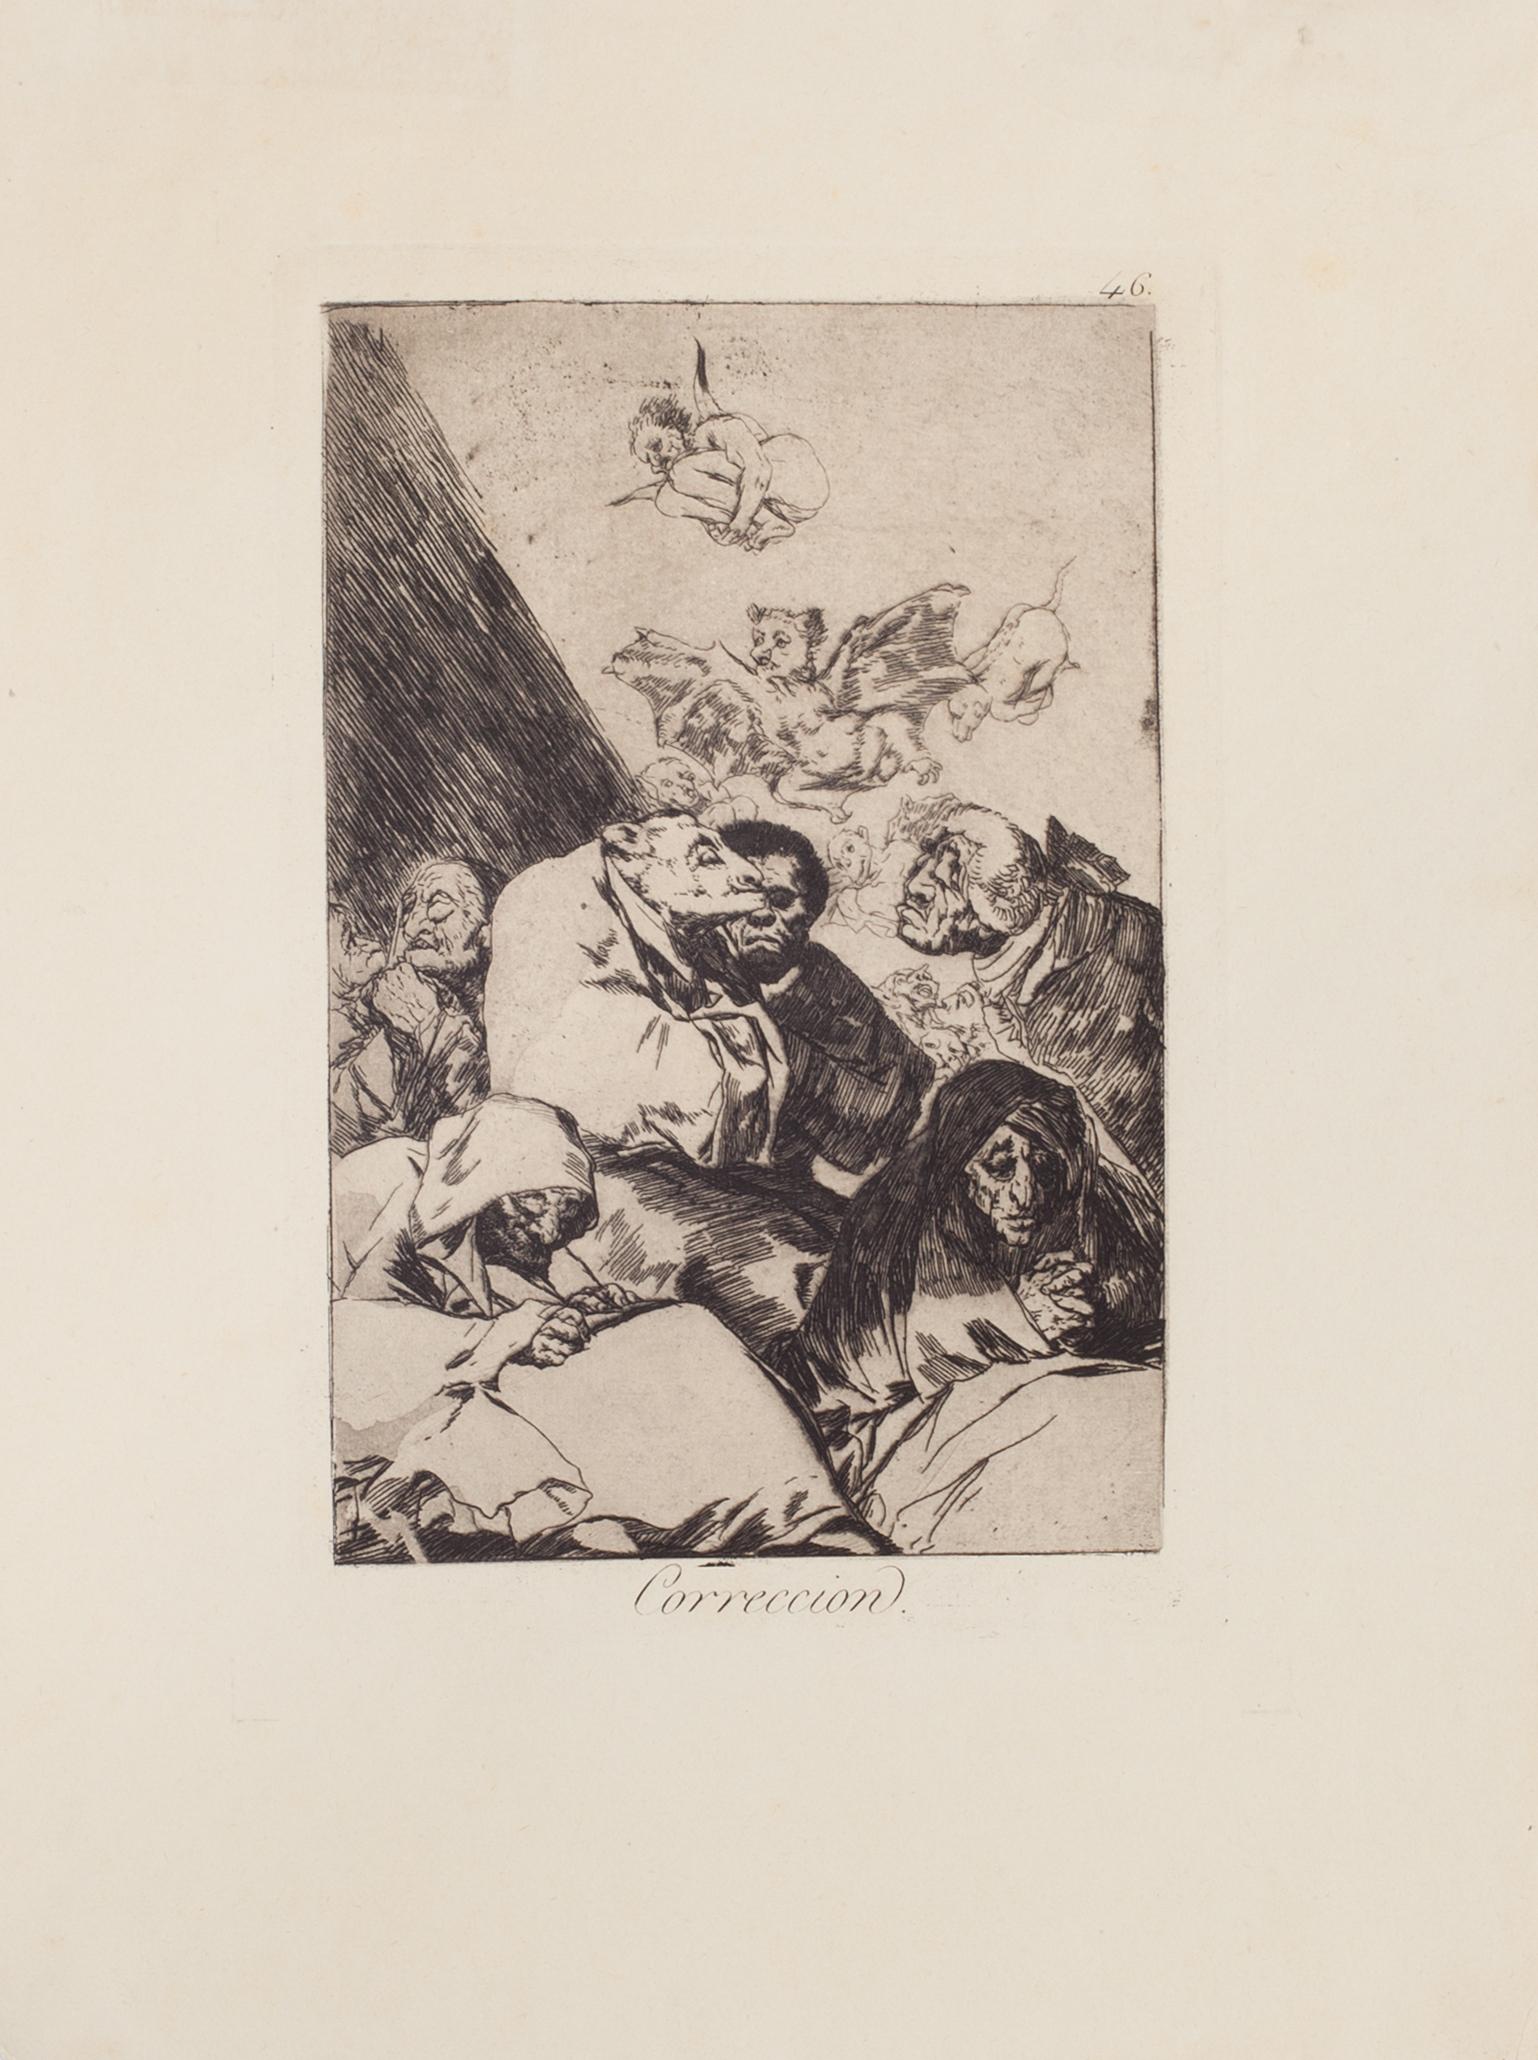 Correccion est une œuvre originale réalisée par Francisco Goya et publiée pour la première fois en 1799.

Eau-forte sur papier vélin.

Cette illustration appartient à la troisième édition publiée en 1868 par la Calcografia National pour la Real